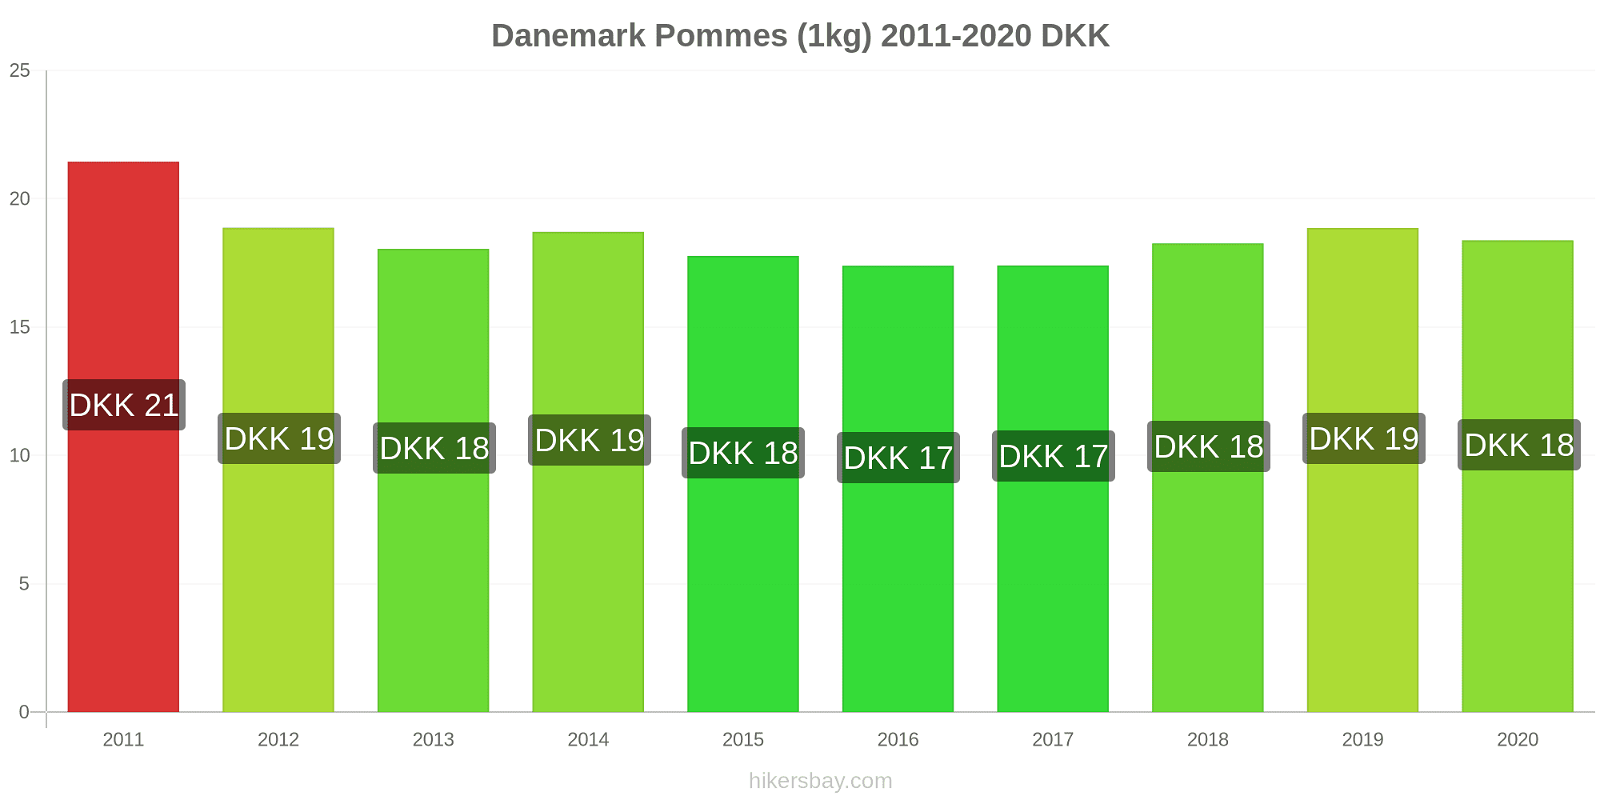 Danemark changements de prix Pommes (1kg) hikersbay.com